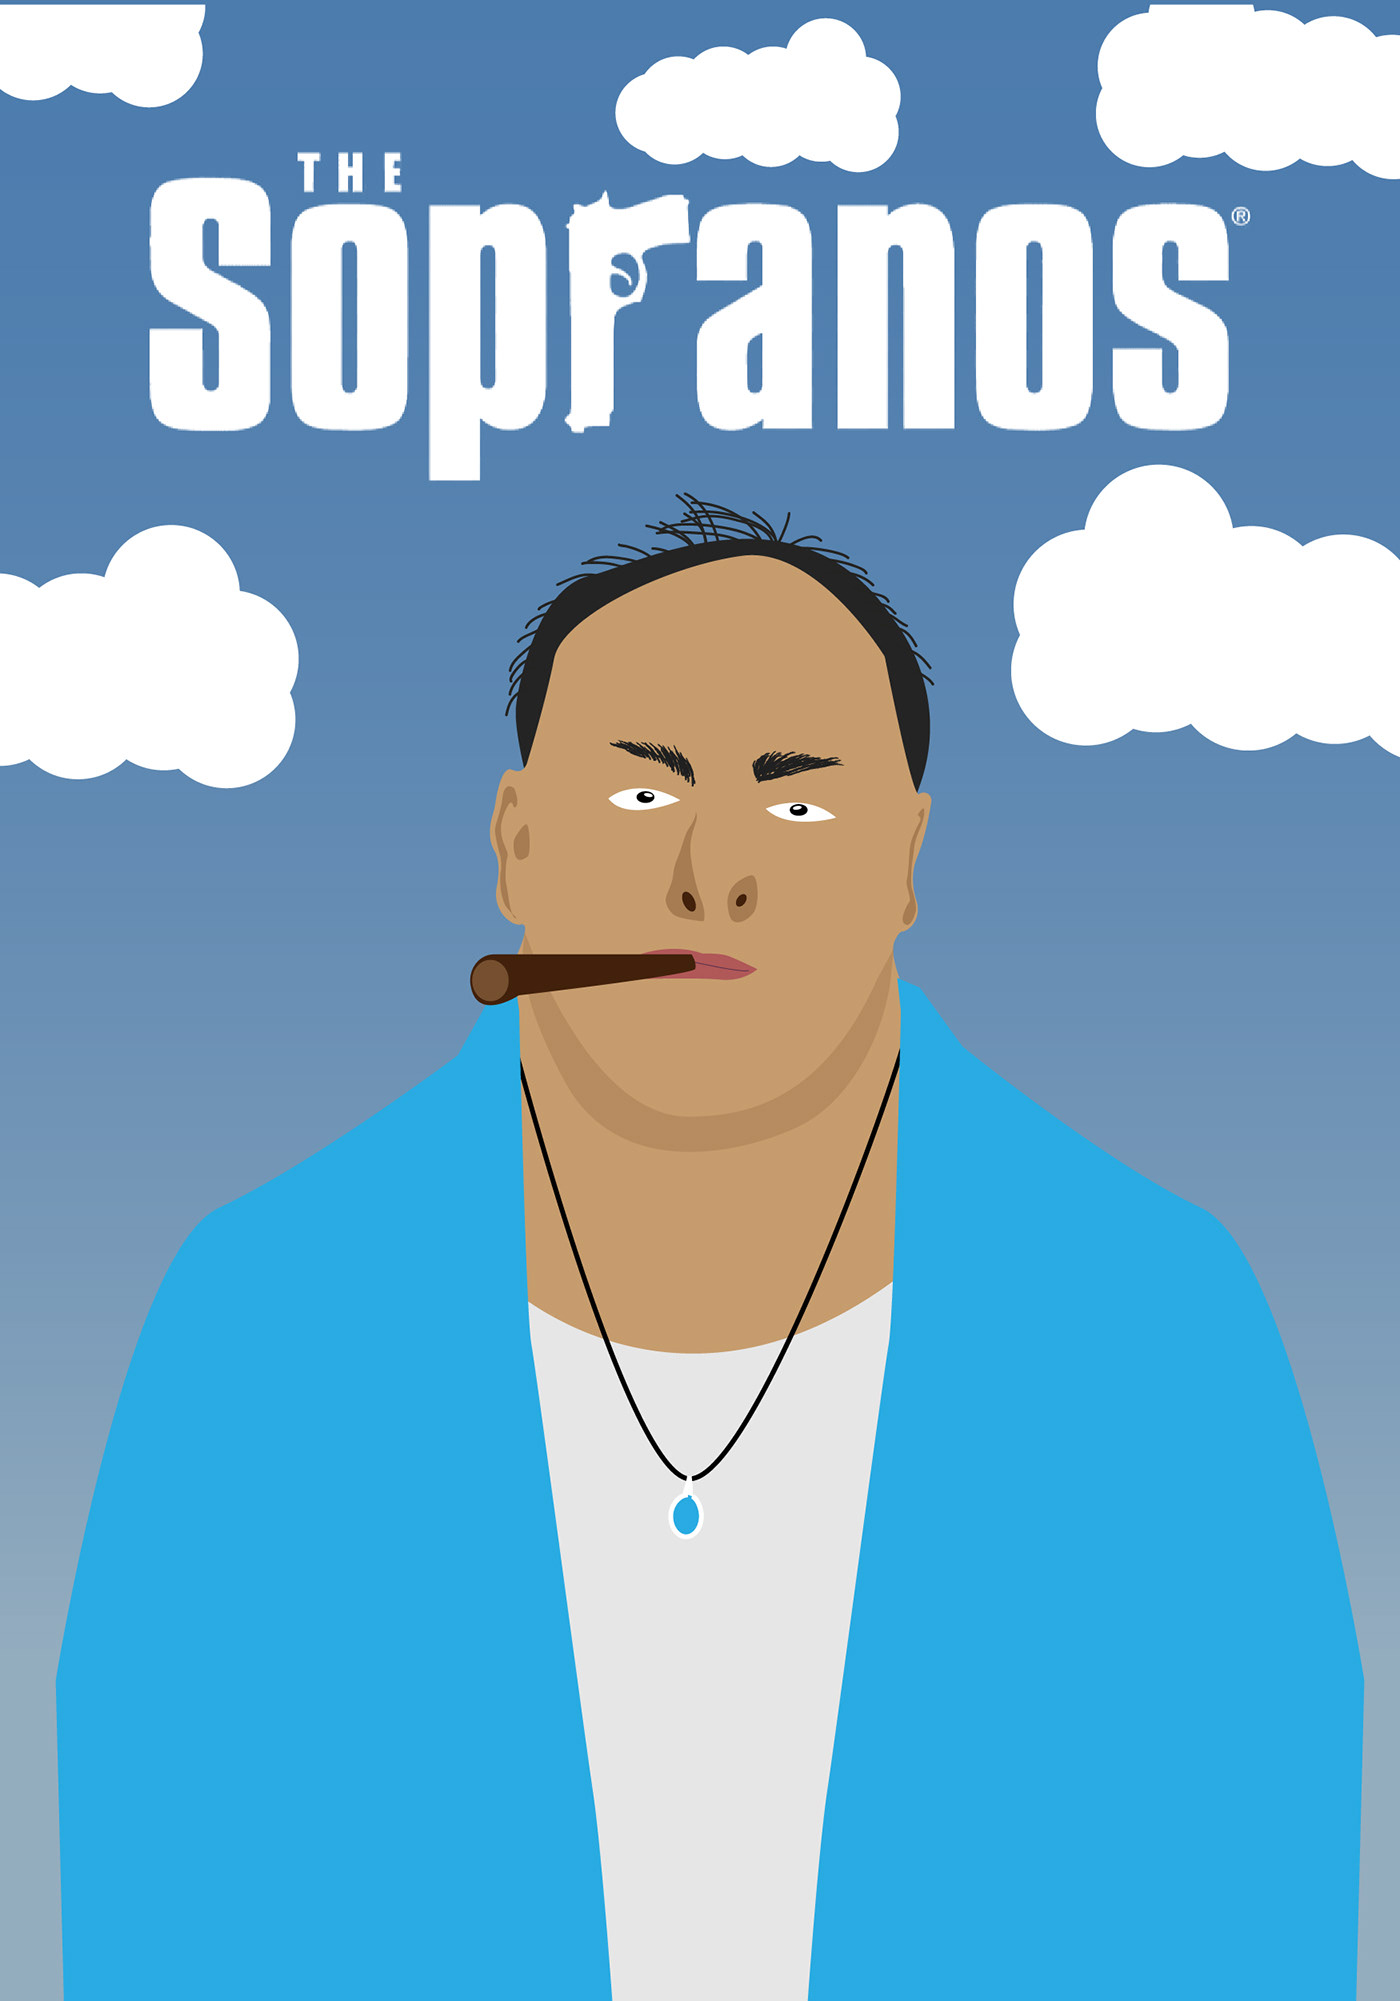 Sopranos movie poster design adobe illustrator digital illustration